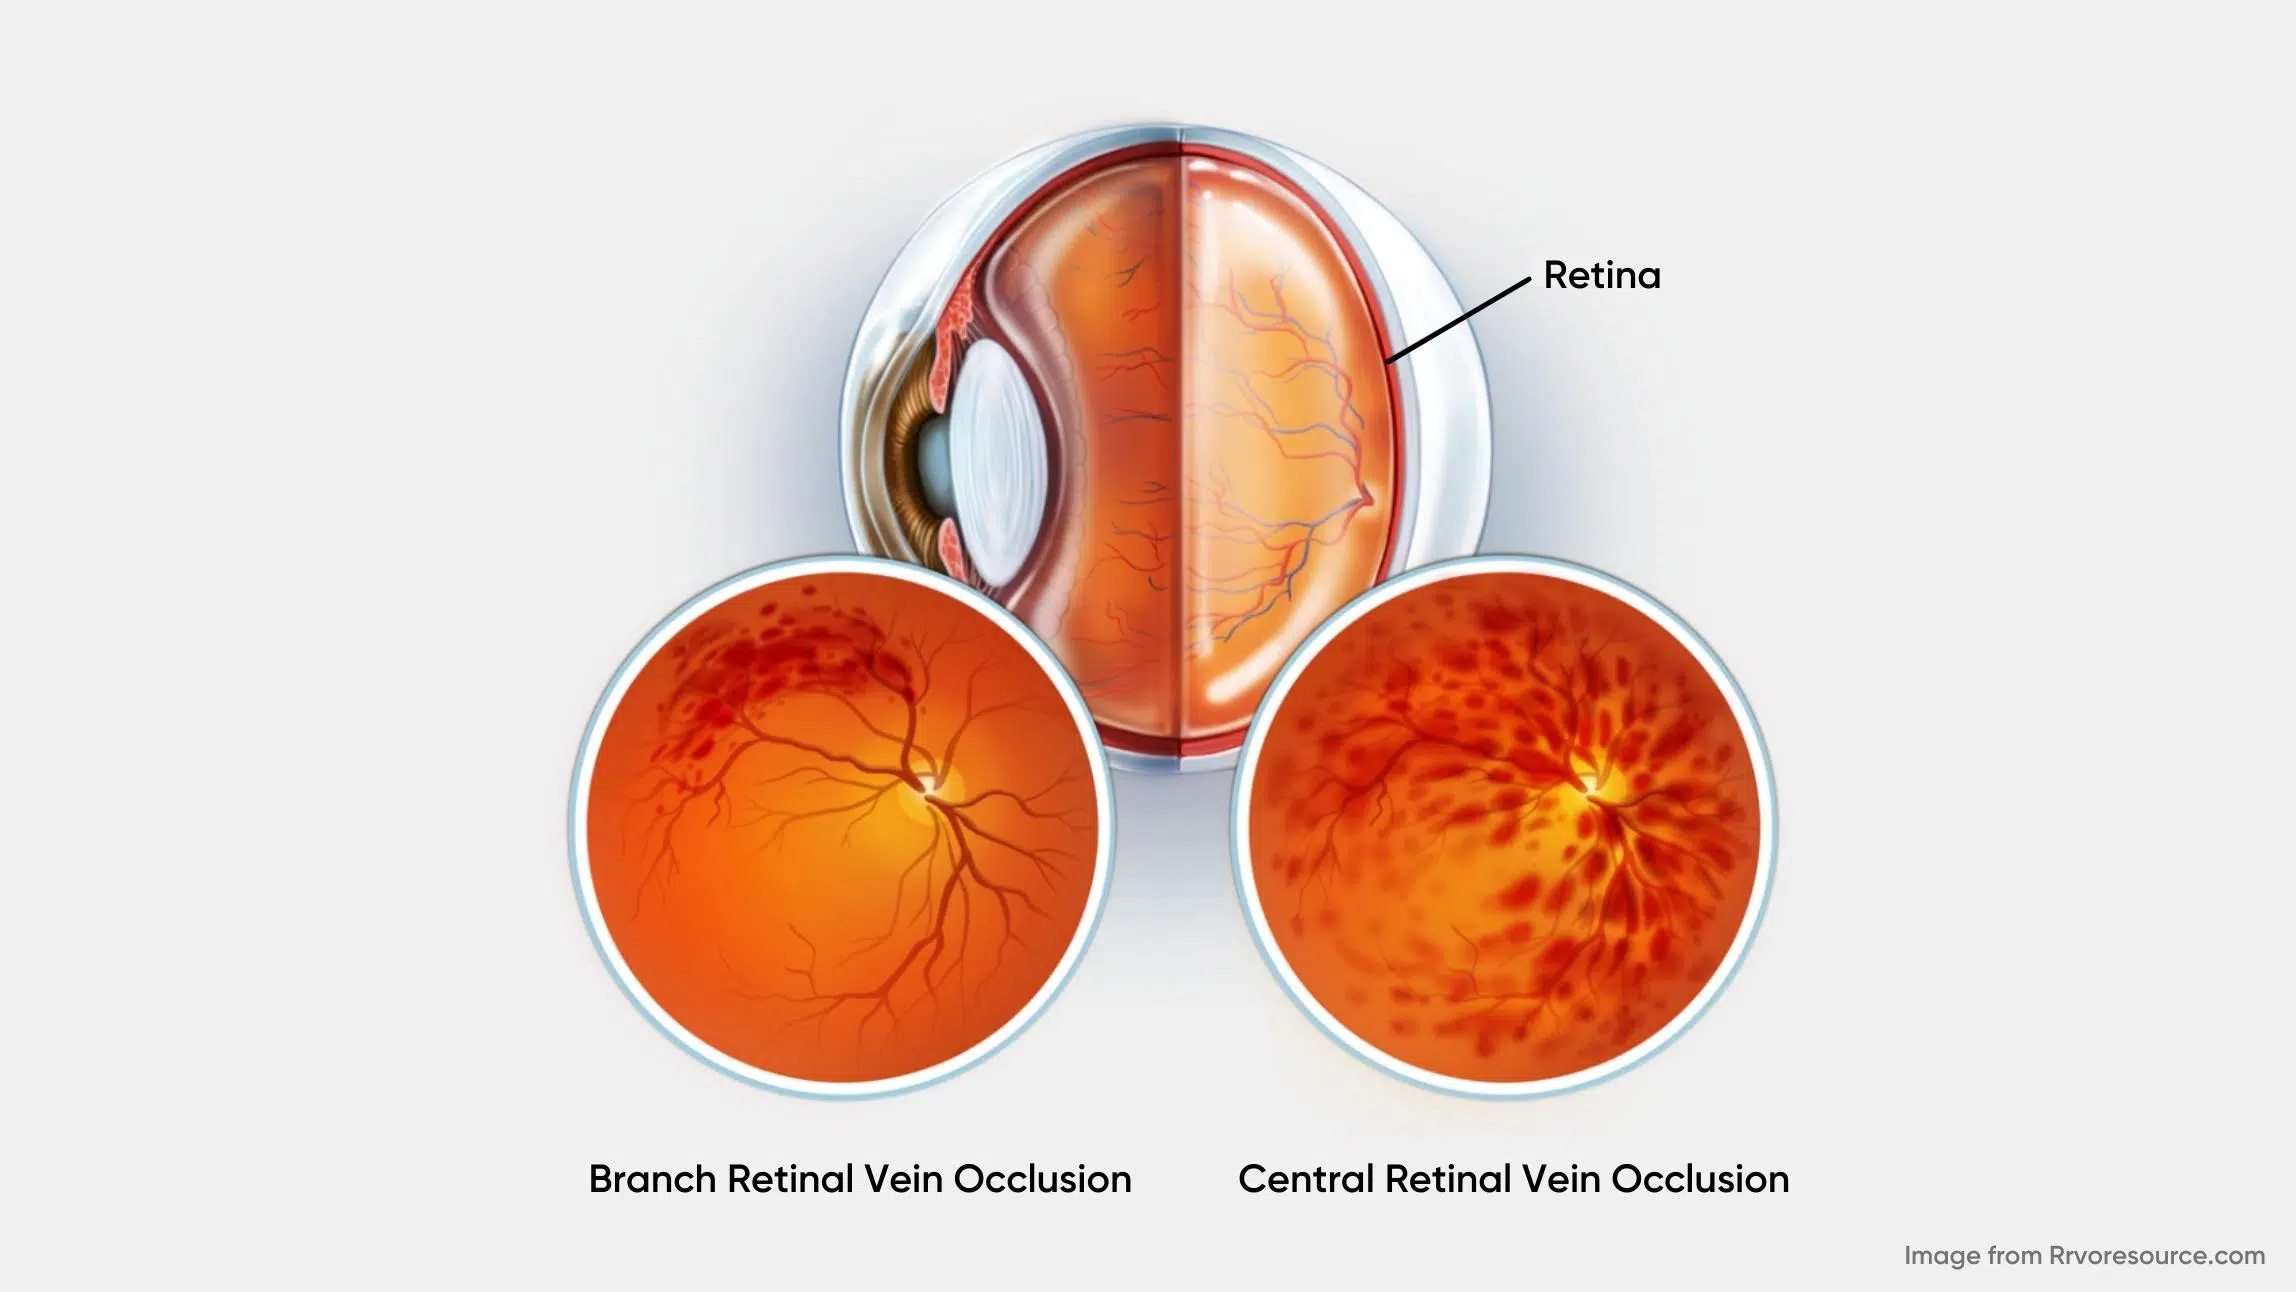 Branch Retinal Vein Occlusion (4)